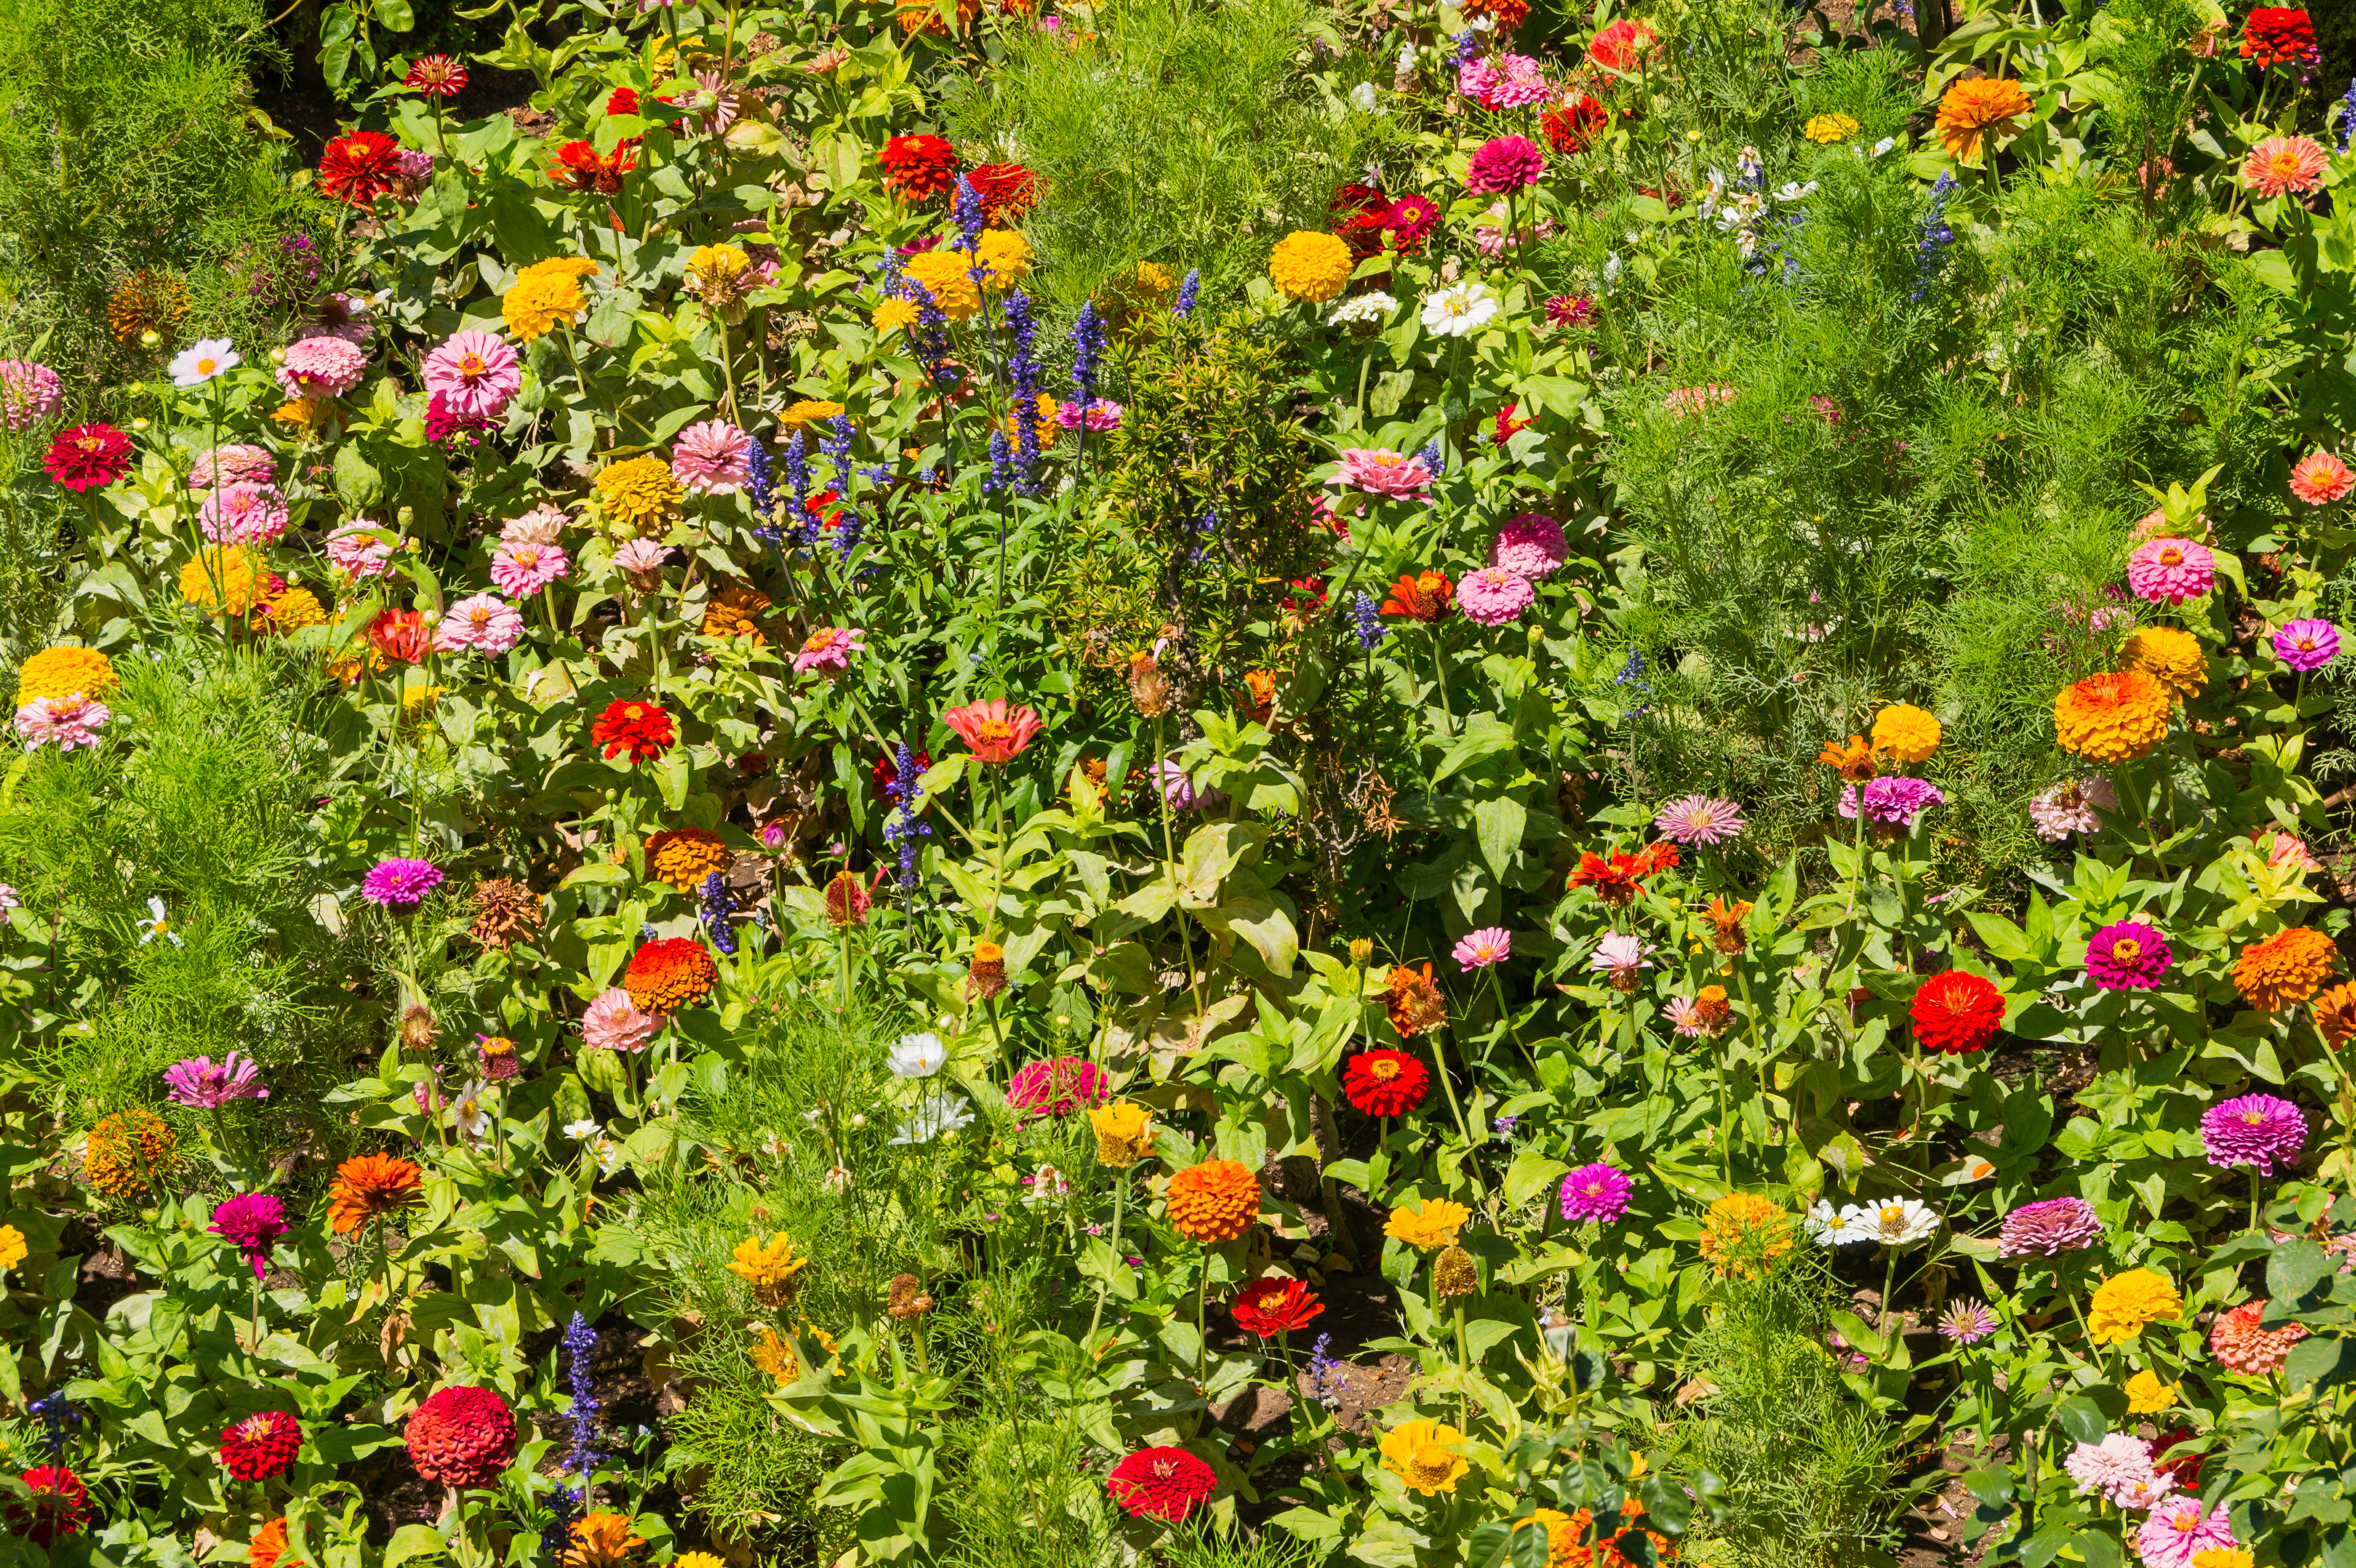 Various flowers in Generalife gardens, Granada, Spain